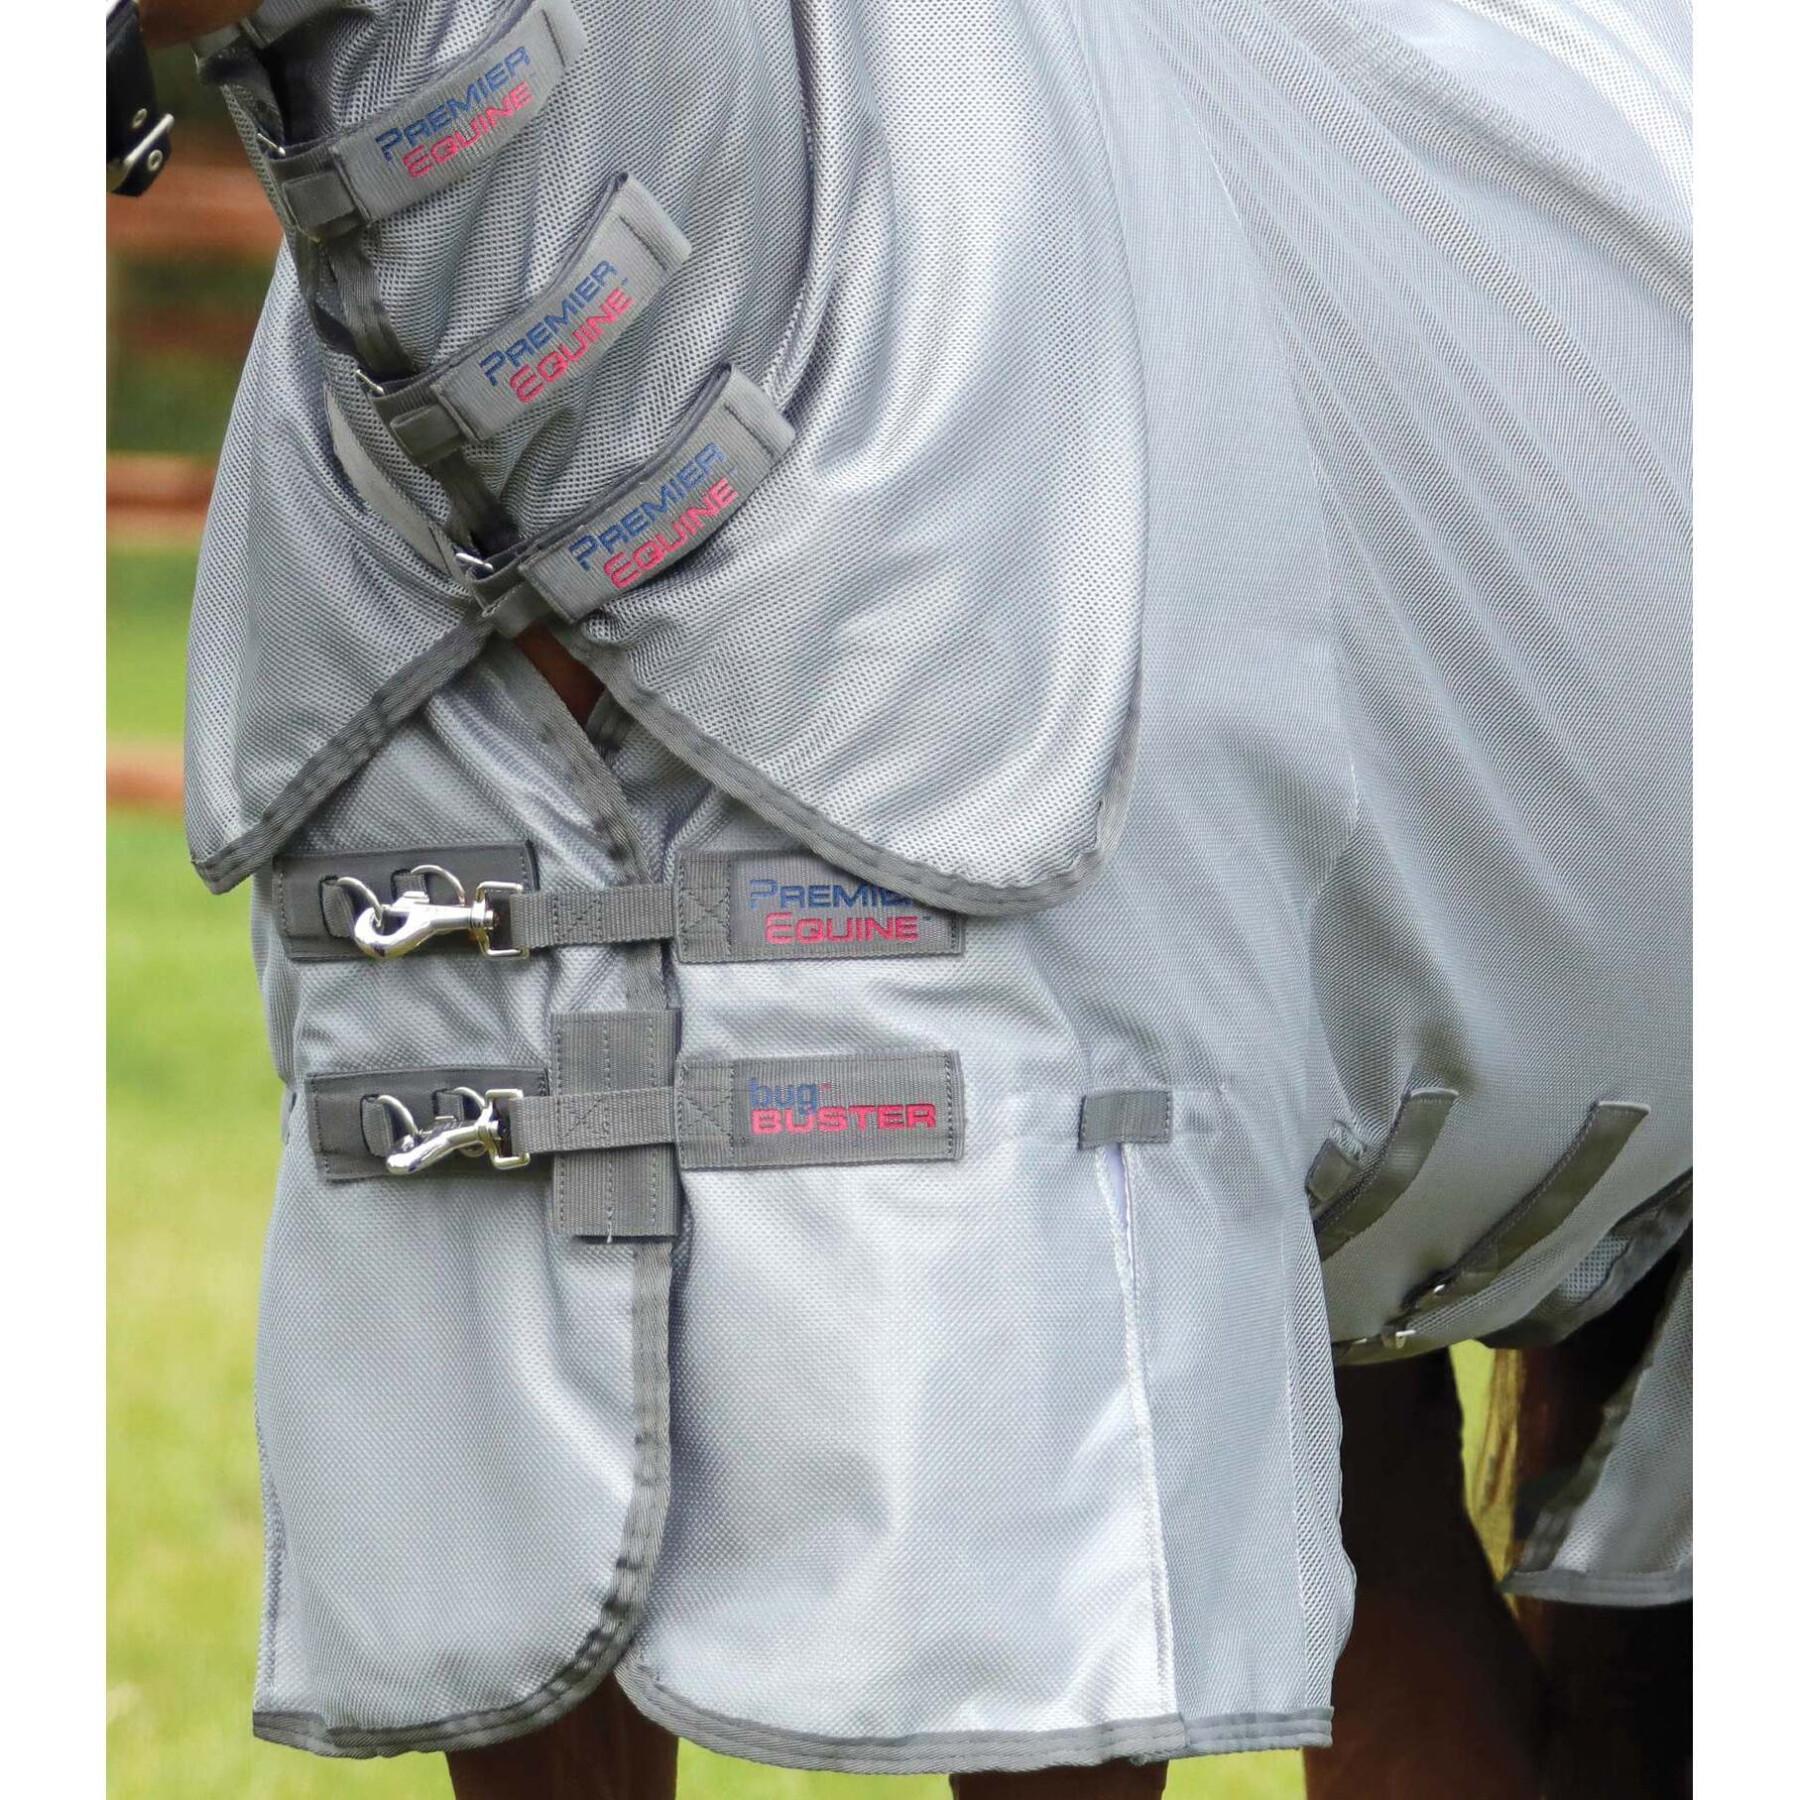 Couverture anti-mouches pour cheval avec rabat ventral Premier Equine Bug Buster